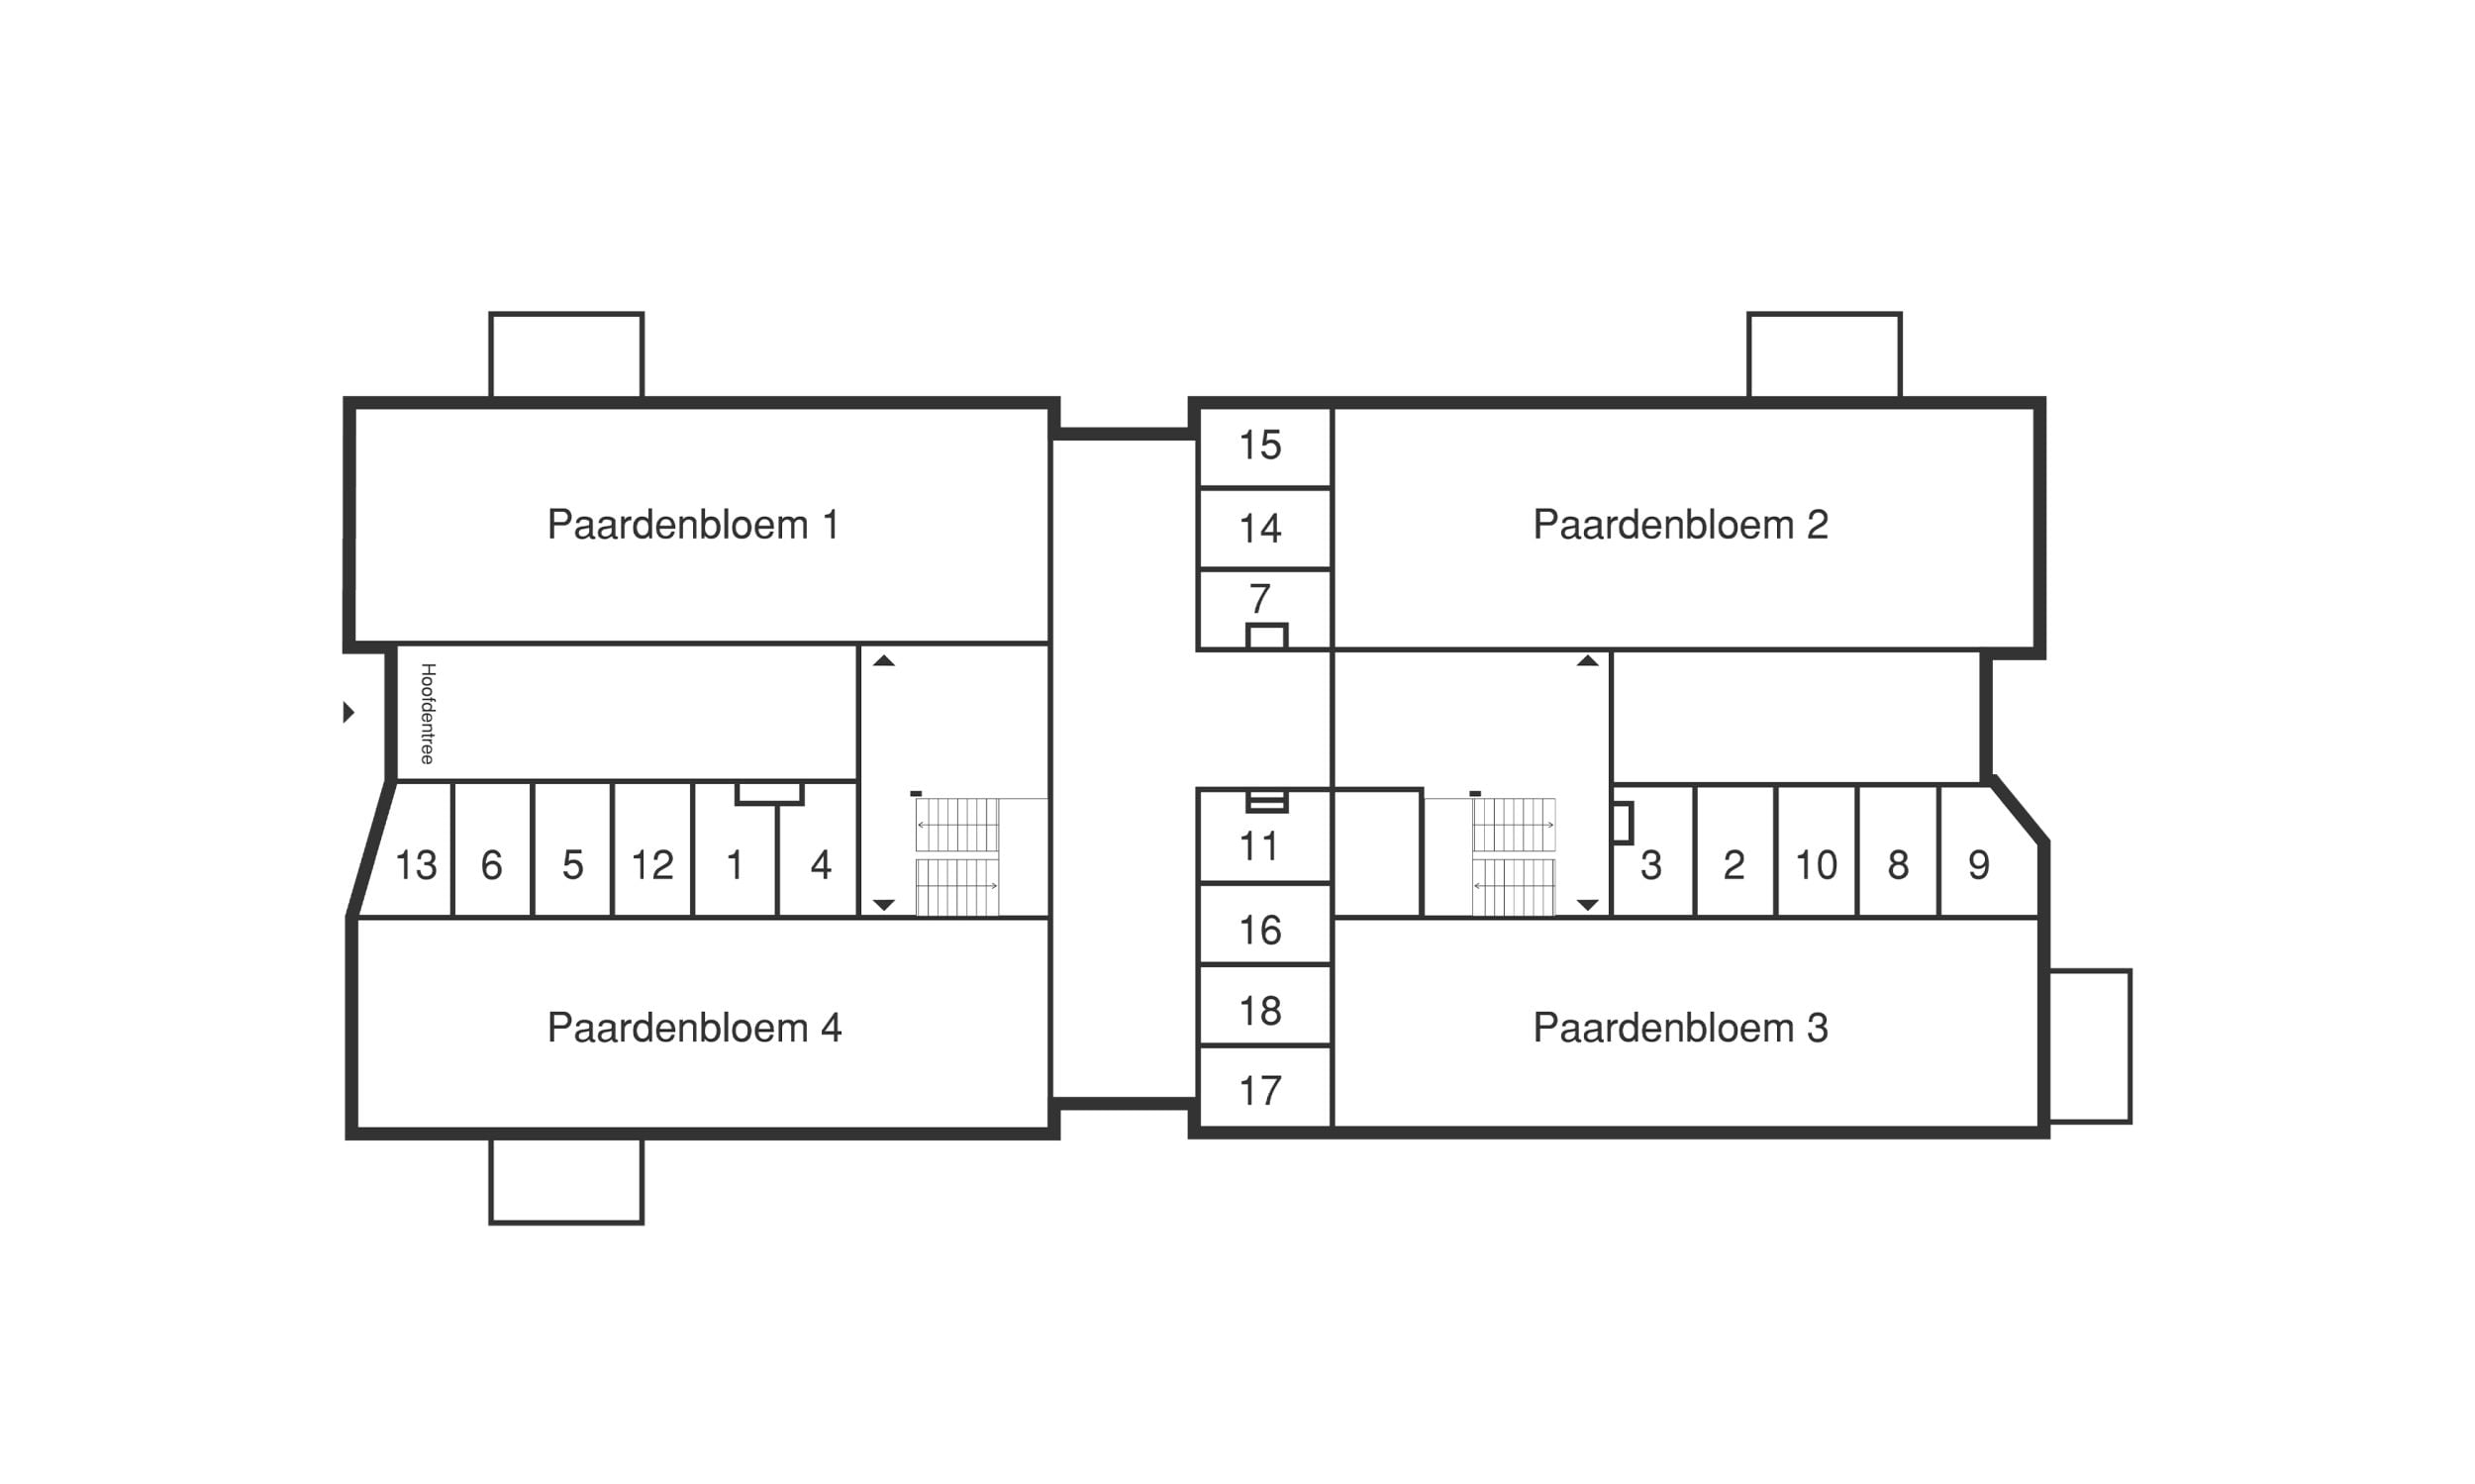 Een plattegrond van een huis met twee verdiepingen, ook wel "plattegronden" genoemd.